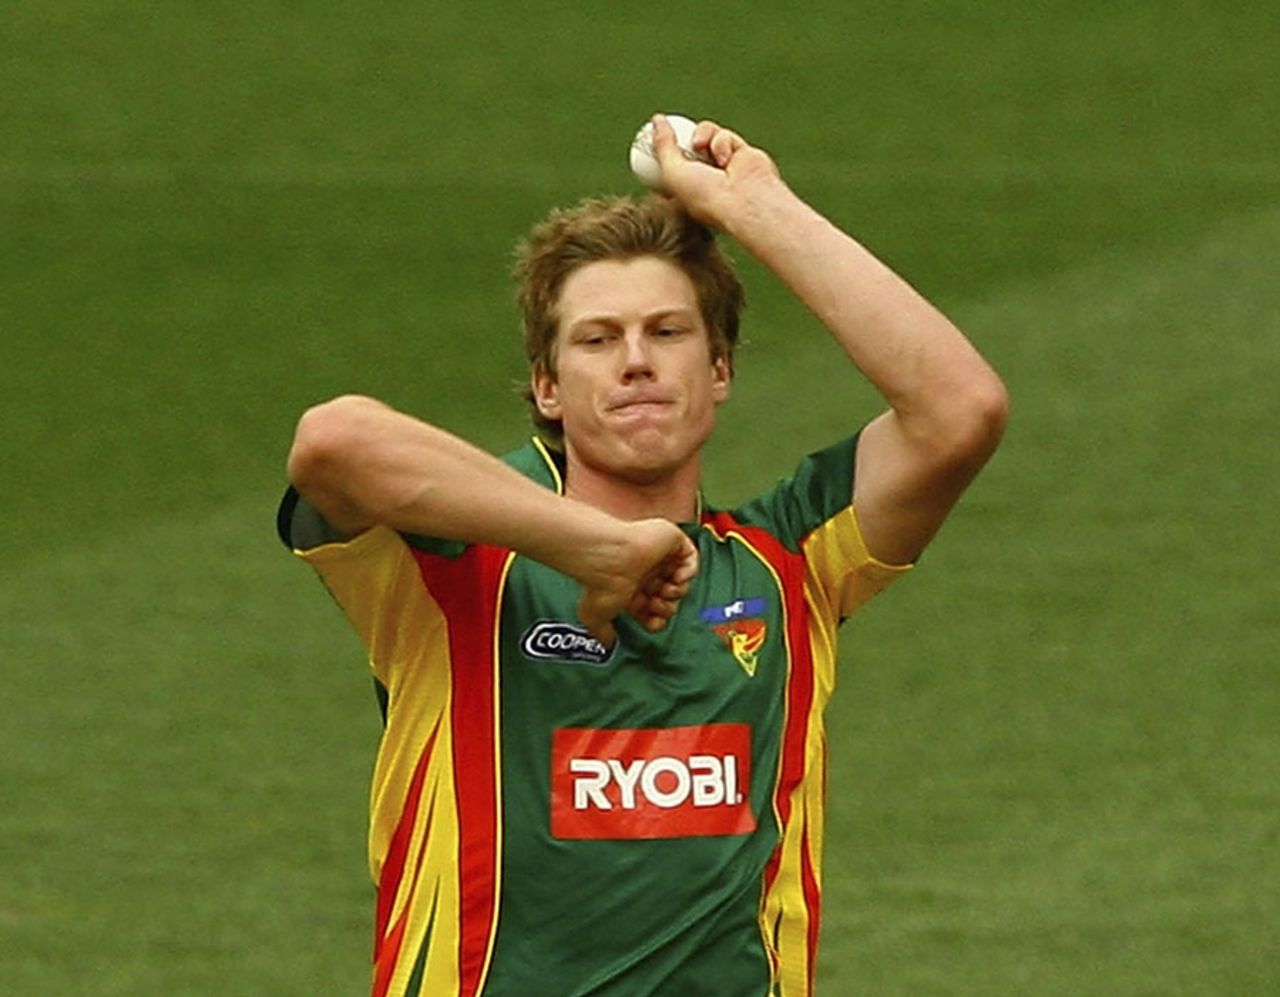 James Faulkner runs up to bowl, Victoria v Tasmania, Ryobi Cup final, Melbourne, February 27, 2011